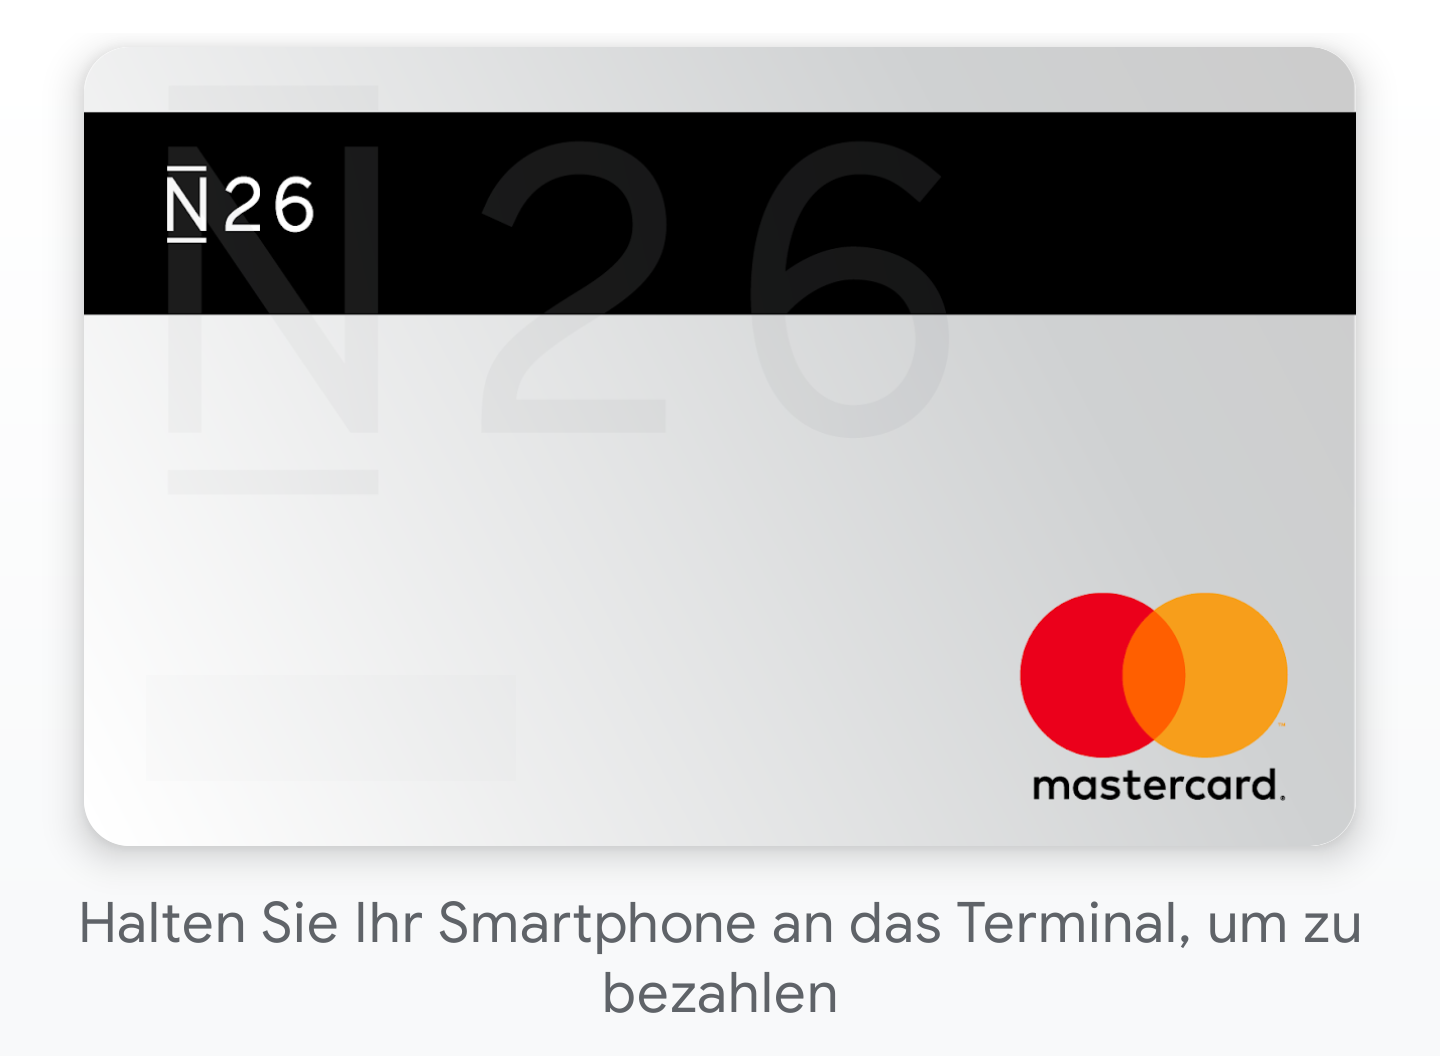 Kreditkarte in Google Pay - bereit zur kontaktlosen Zahlung / Bild-Quelle: Google Pay App